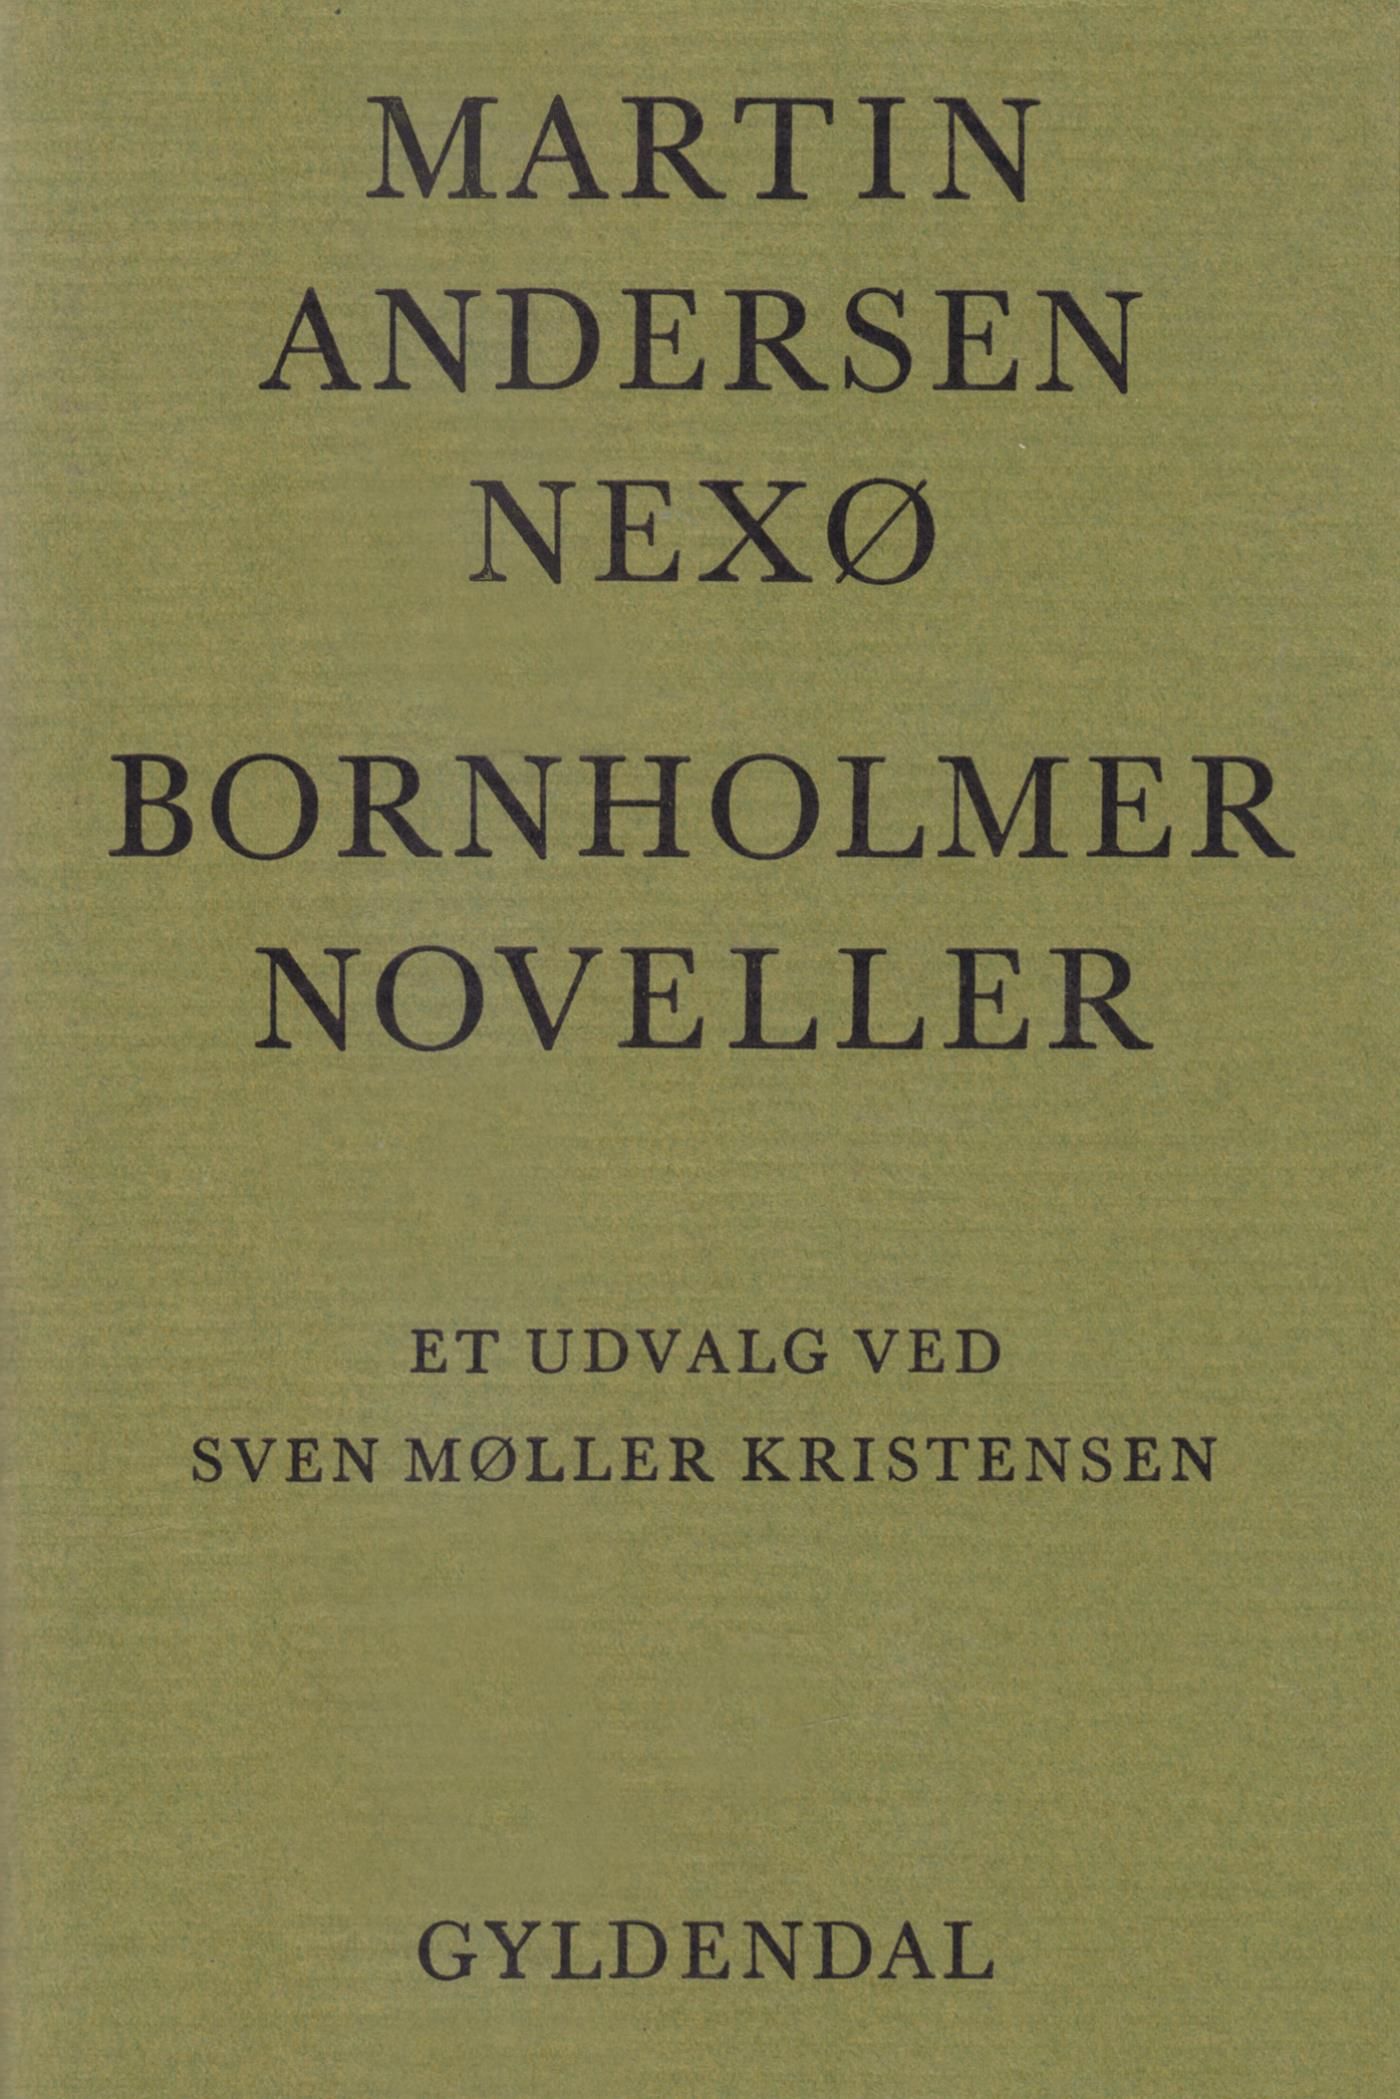 Bornholmer-Noveller, e-bok av Martin Andersen Nexø